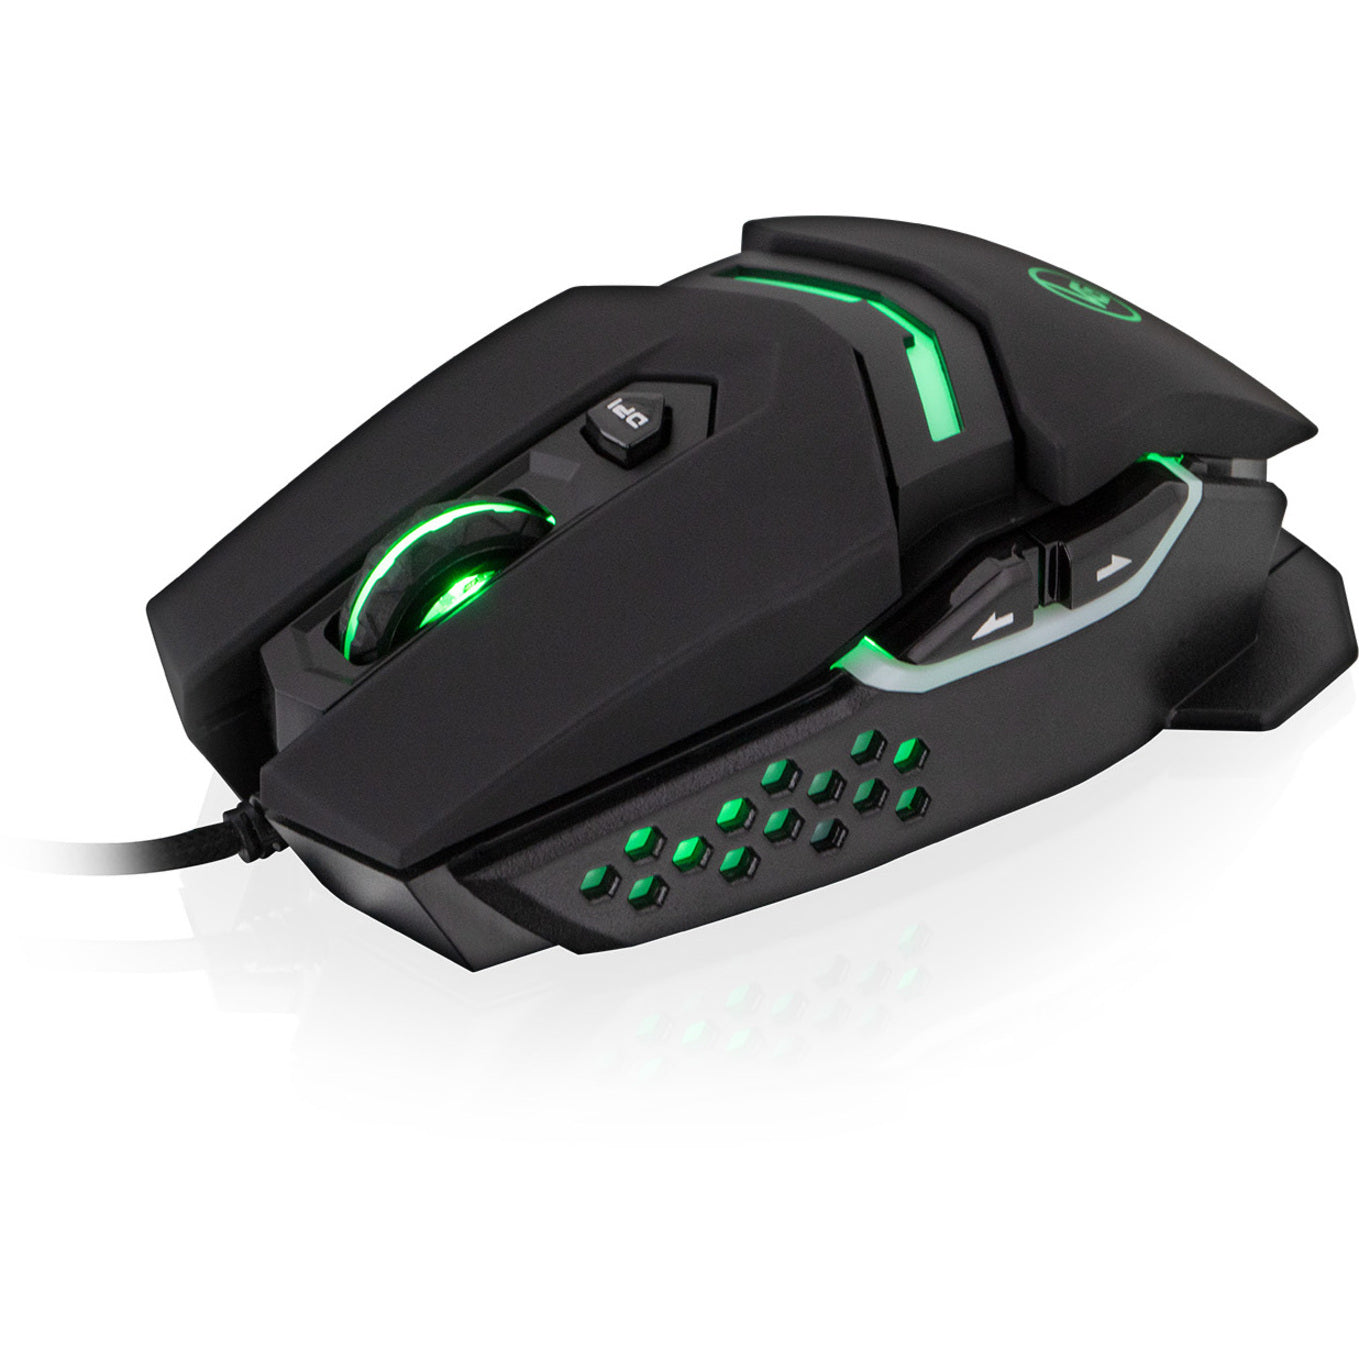 Kaliber Gaming GME671 FOKUS II Pro Gaming Mouse, 12,000DPI, Programmable RGB Lighting